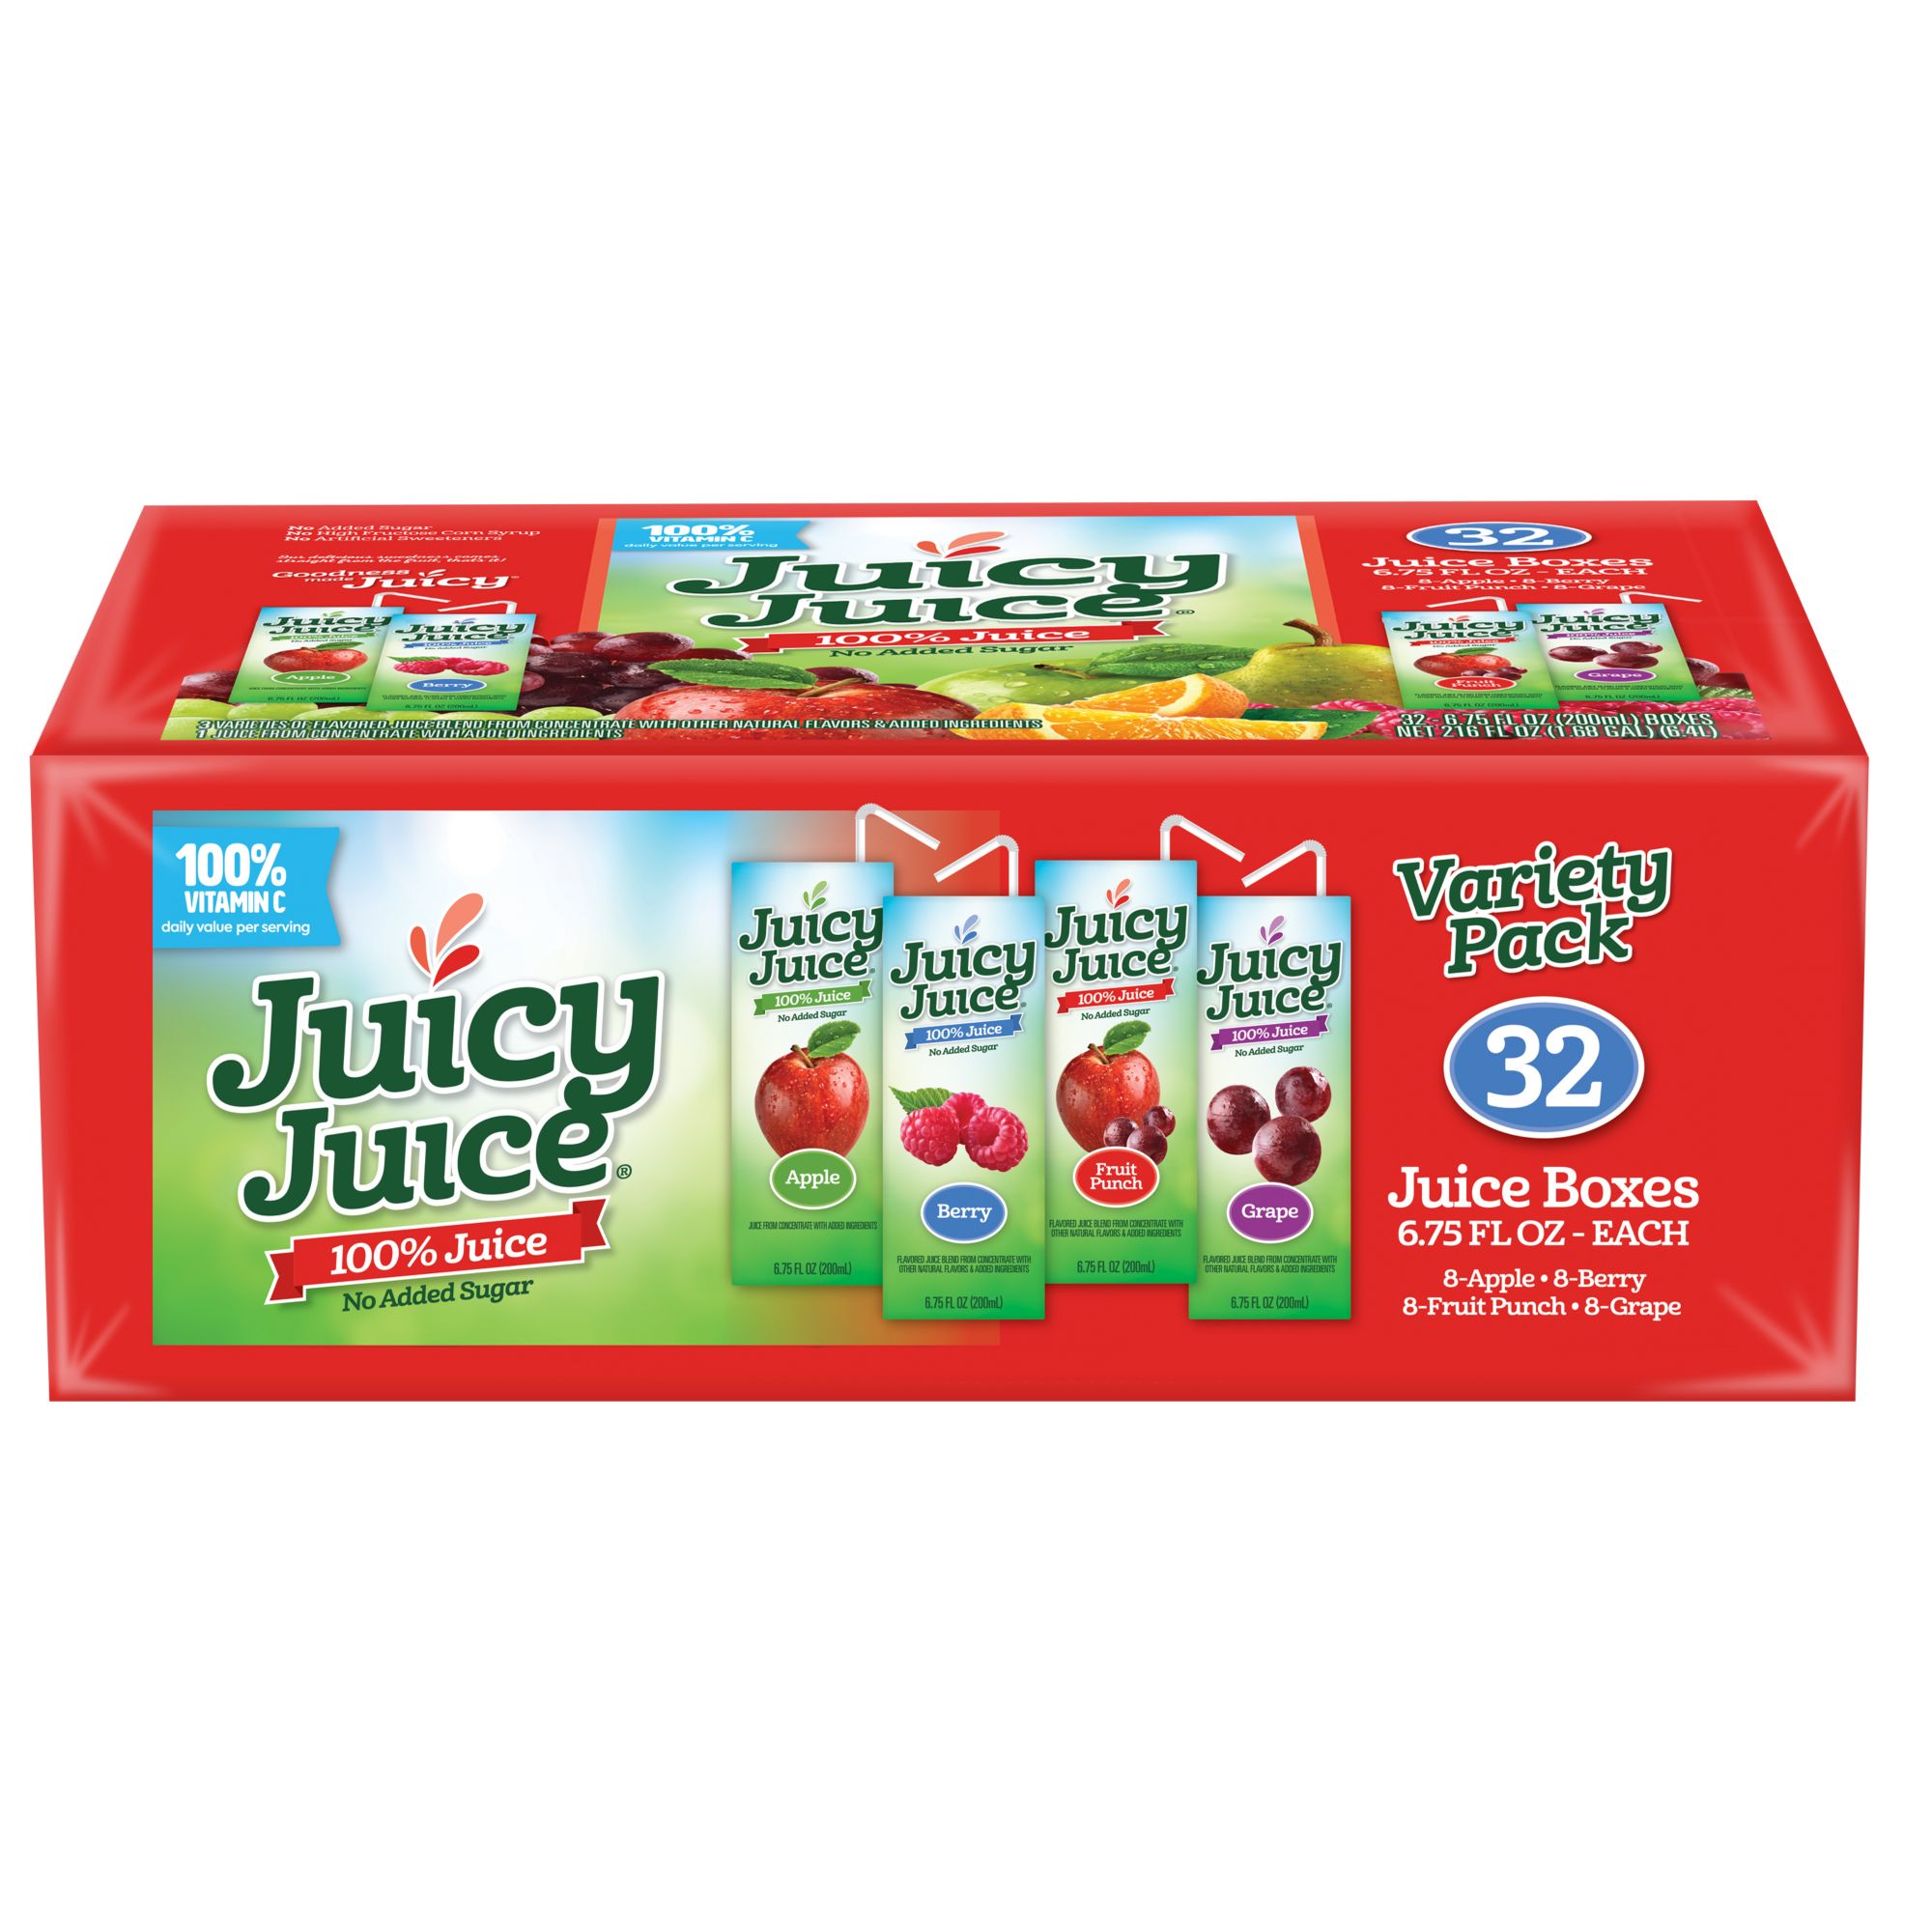 juicy juice apple juice box